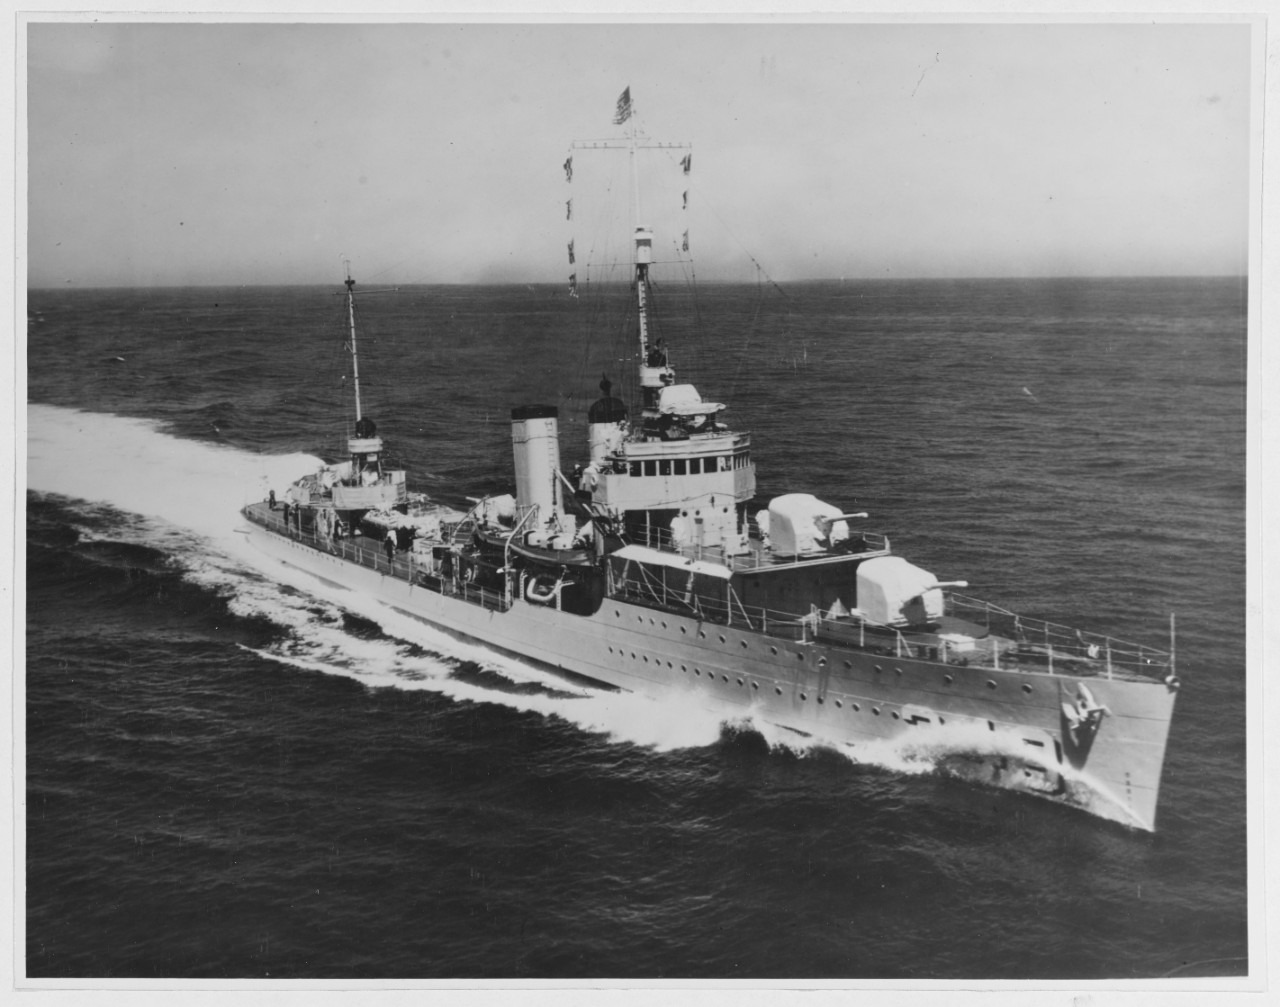 USS DEWEY (DD-349)